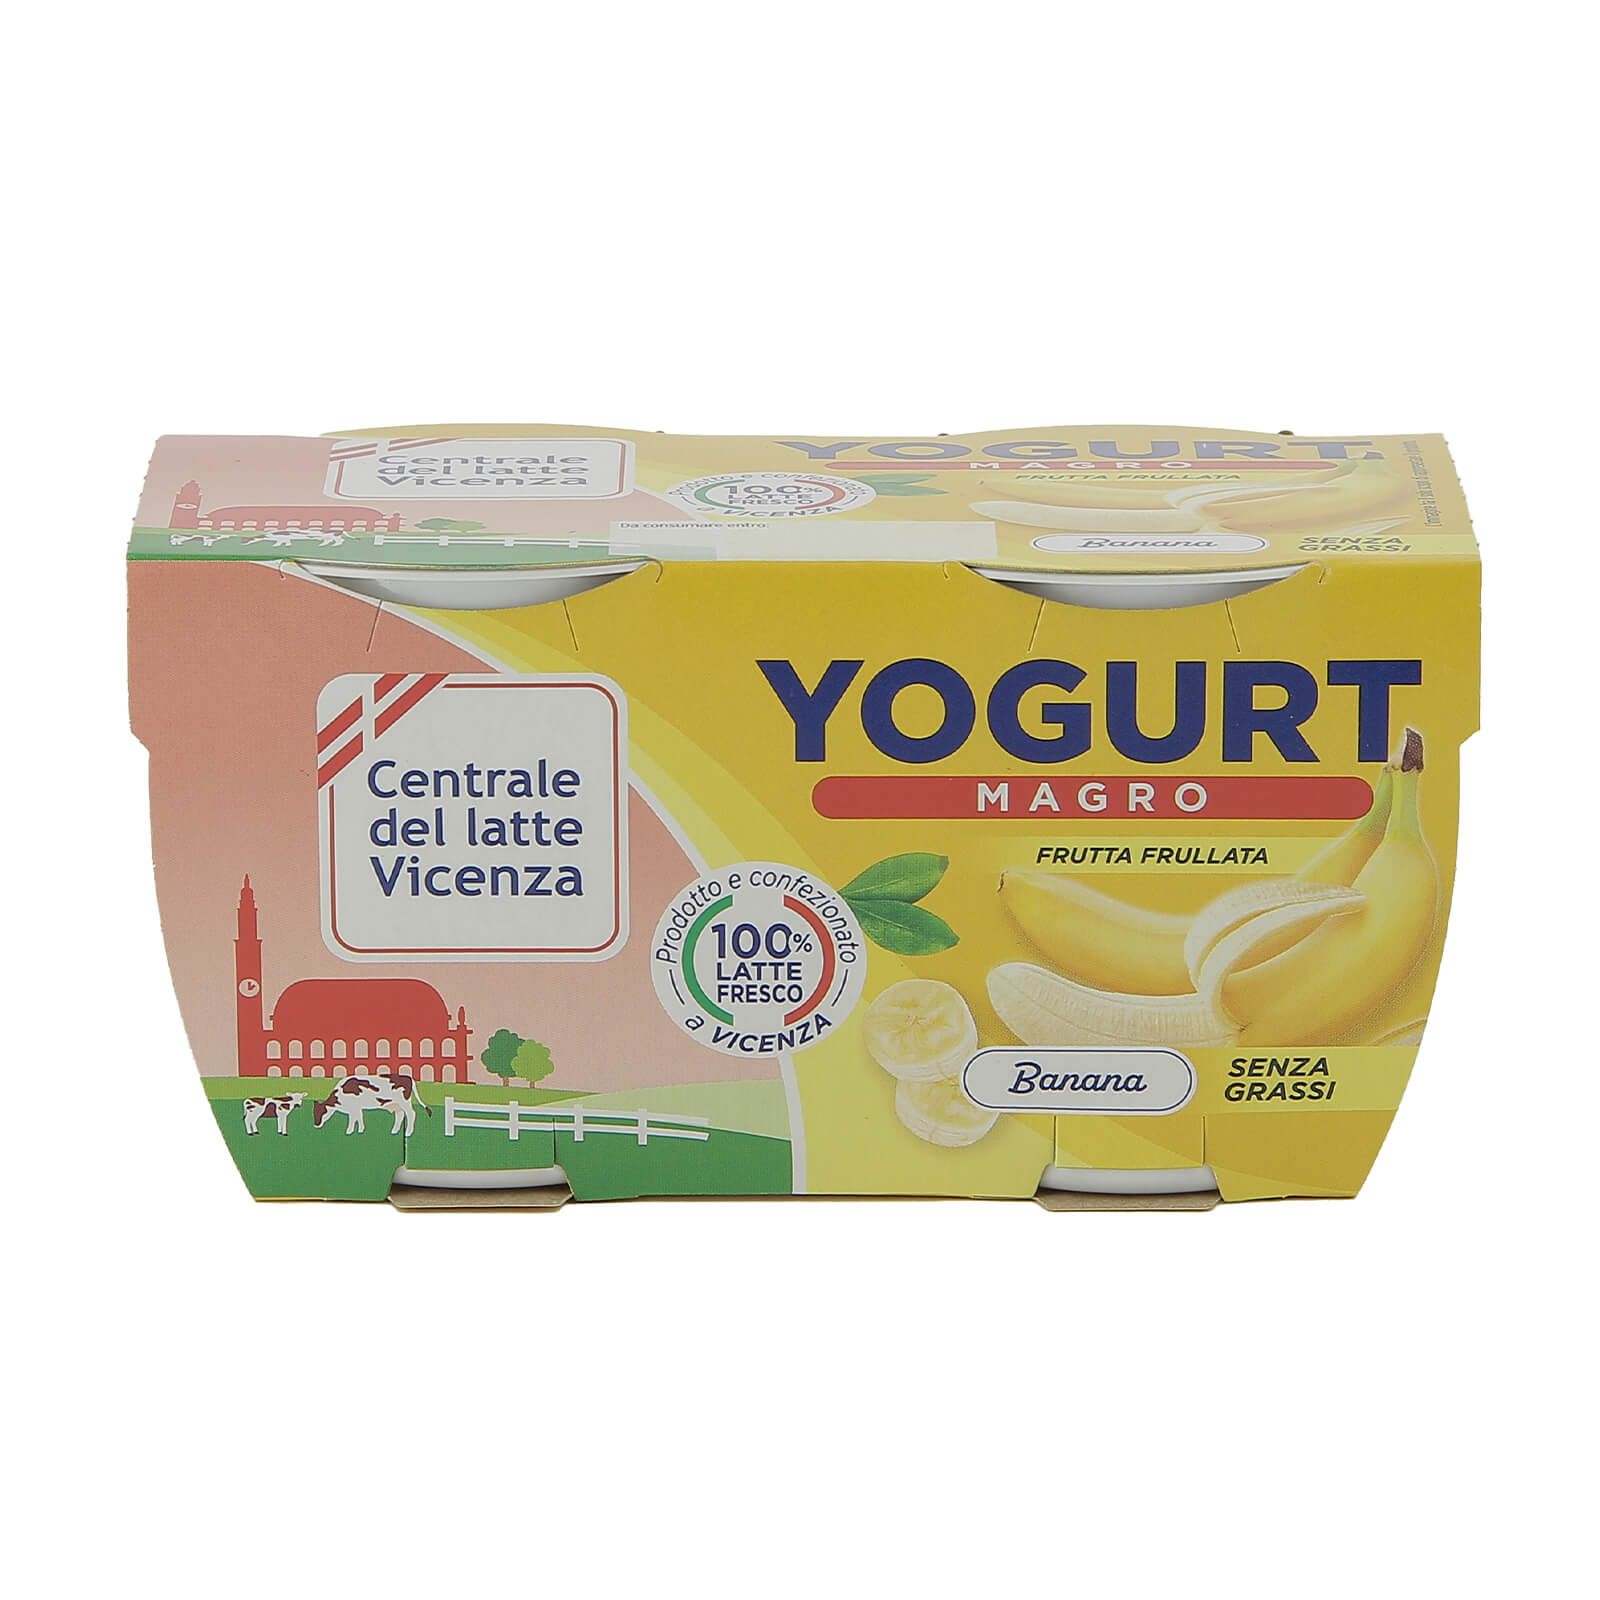 Yogurt Magro Vicenza - Banana - Centrale del Latte di Vicenza